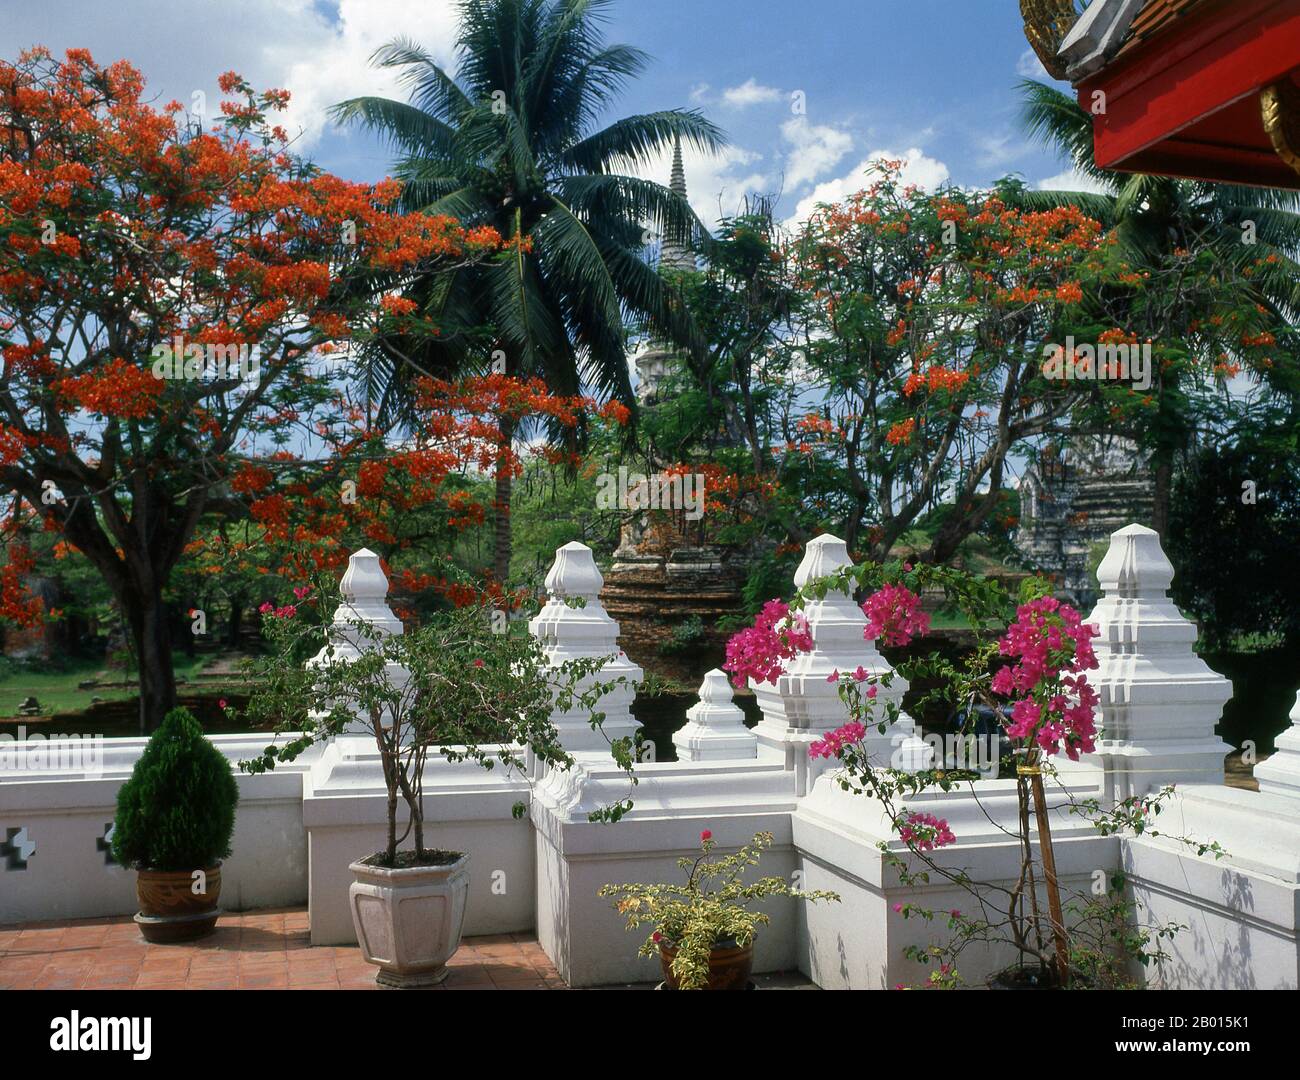 Thailandia: Viharn Mongkol Bopit, Ayutthaya Historical Park. Viharn Mongkol Bopit (Wihaan Mongkhon Bophit) contiene un'immagine di Buddha di bronzo del XV secolo, una delle più grandi della Thailandia. Ayutthaya (Ayudhya)) era un regno siamese che esisteva dal 1351 al 1767. Ayutthaya era amichevole verso i commercianti stranieri, compreso il cinese, vietnamita (Annamese), indiani, giapponesi e persiani, E poi le potenze europee, permettendo loro di creare villaggi fuori dalle mura della città. Nel sedicesimo secolo, è stato descritto dai commercianti stranieri come una delle città più grandi e più ricche nell'est. Foto Stock